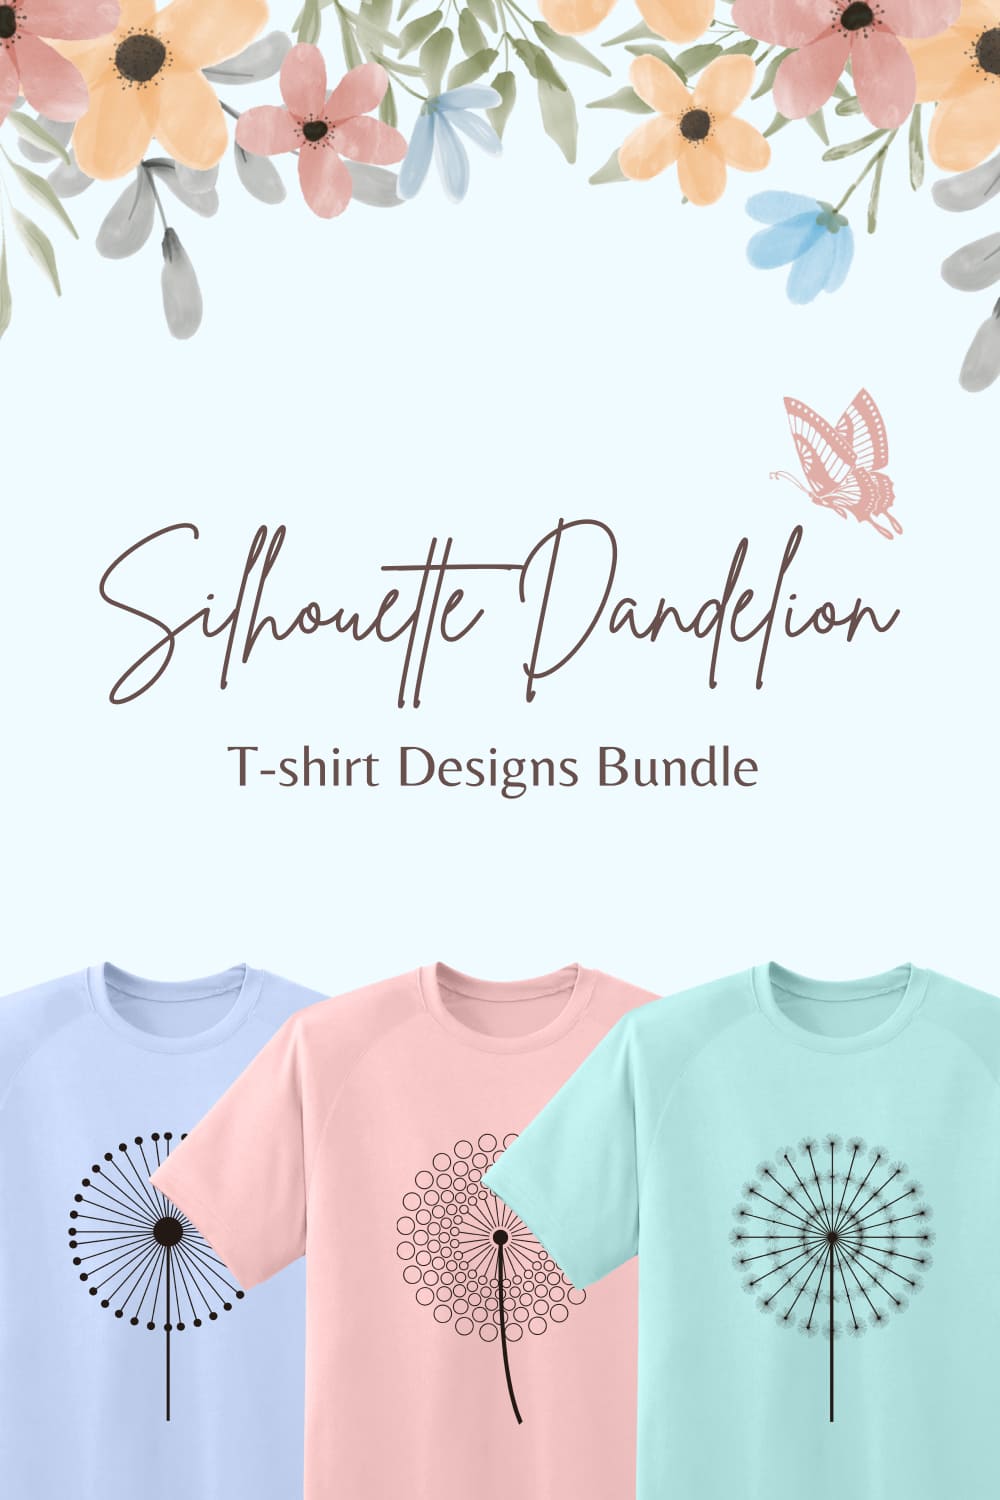 Silhouette Dandelion T-shirt Designs Bundle - Pinterest.